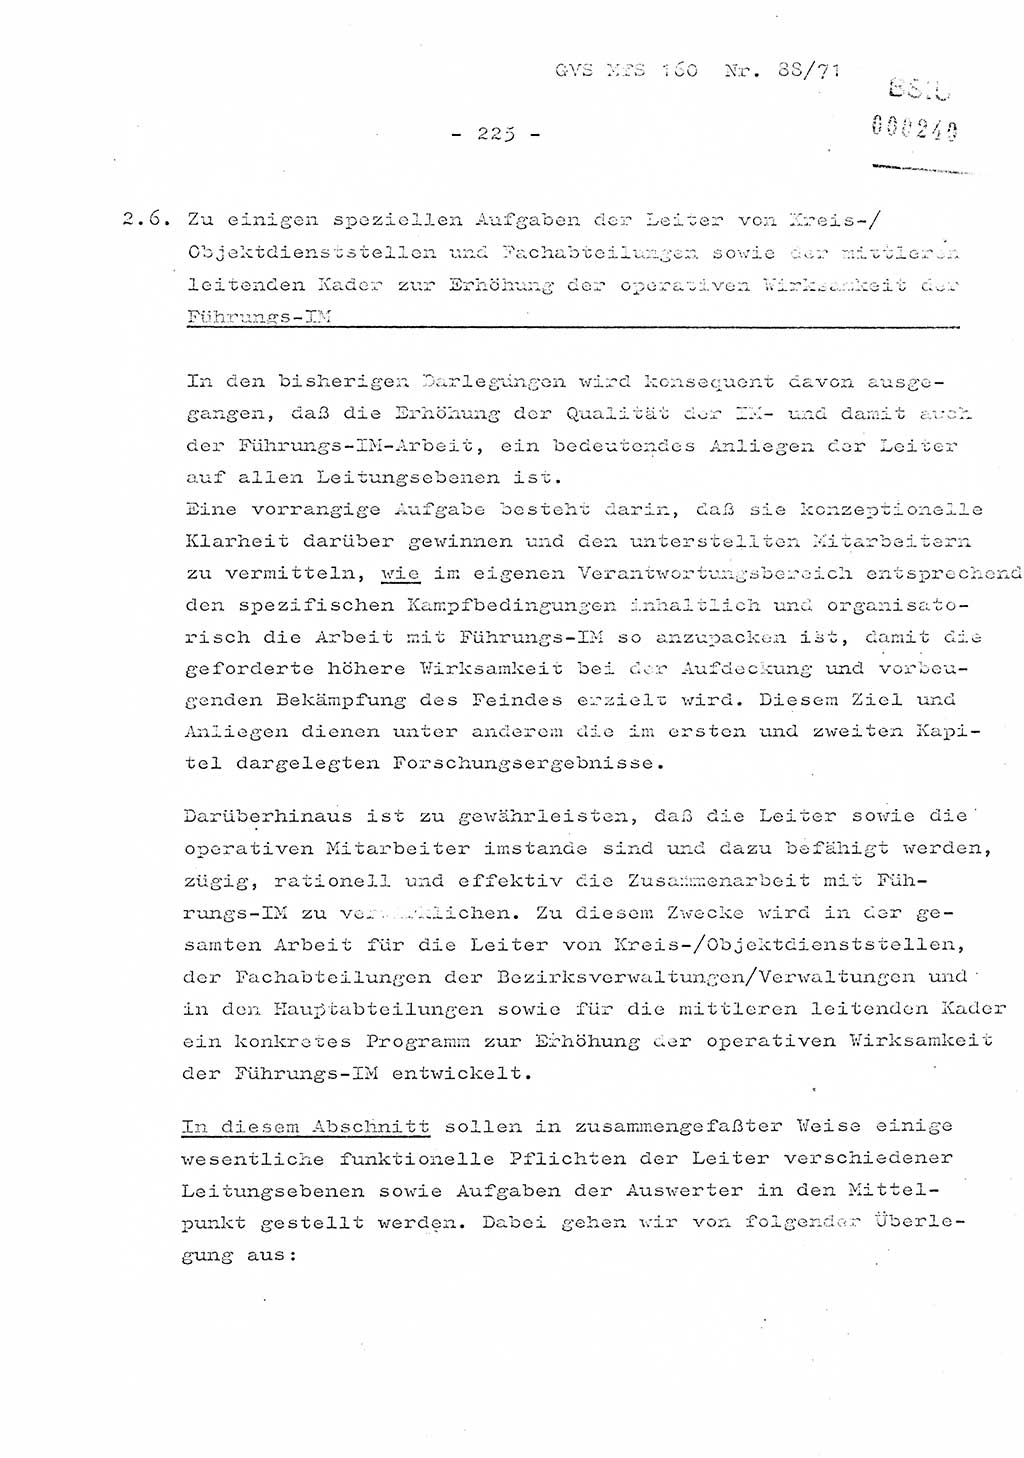 Dissertation Oberstleutnant Josef Schwarz (BV Schwerin), Major Fritz Amm (JHS), Hauptmann Peter Gräßler (JHS), Ministerium für Staatssicherheit (MfS) [Deutsche Demokratische Republik (DDR)], Juristische Hochschule (JHS), Geheime Verschlußsache (GVS) 160-88/71, Potsdam 1972, Seite 225 (Diss. MfS DDR JHS GVS 160-88/71 1972, S. 225)